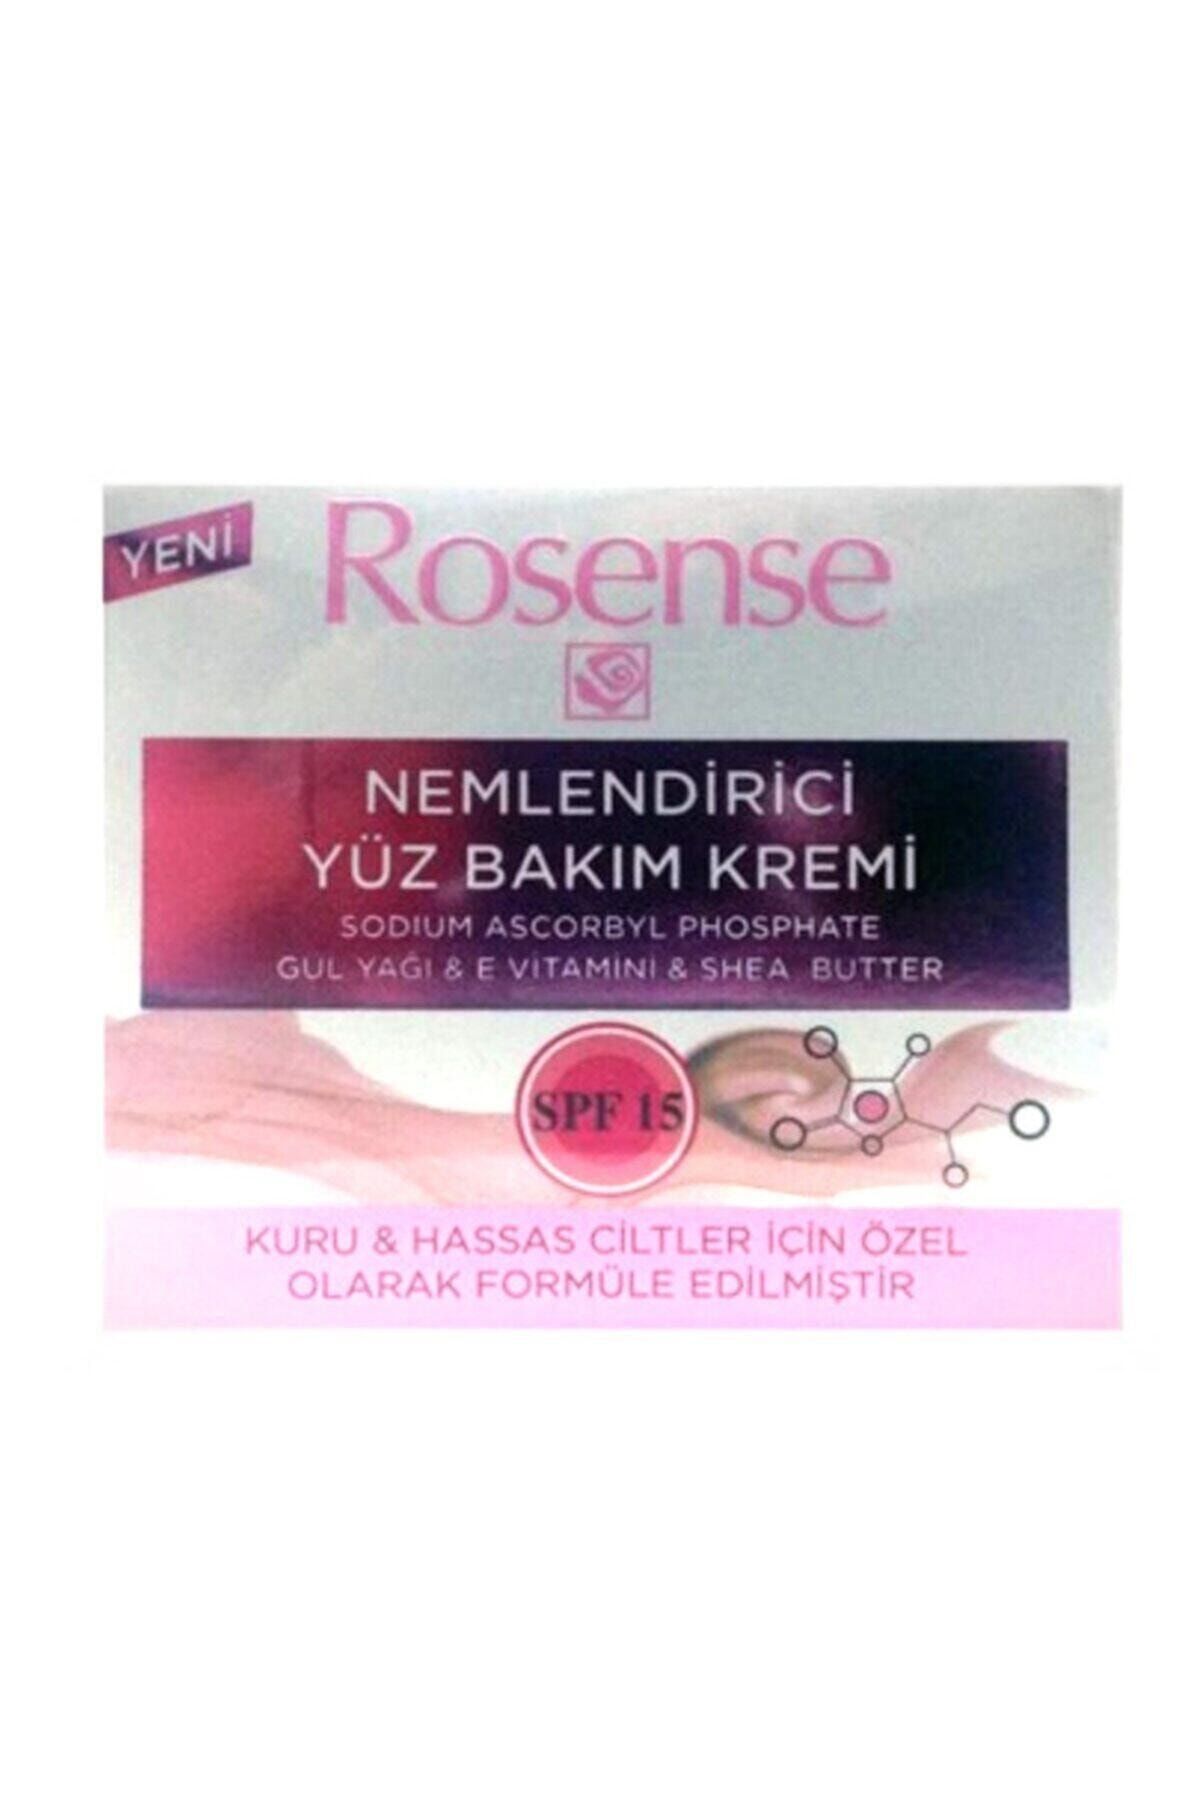 Rosense Nemlendirici Yüz Bakım Kremi Spf 15 50 ml